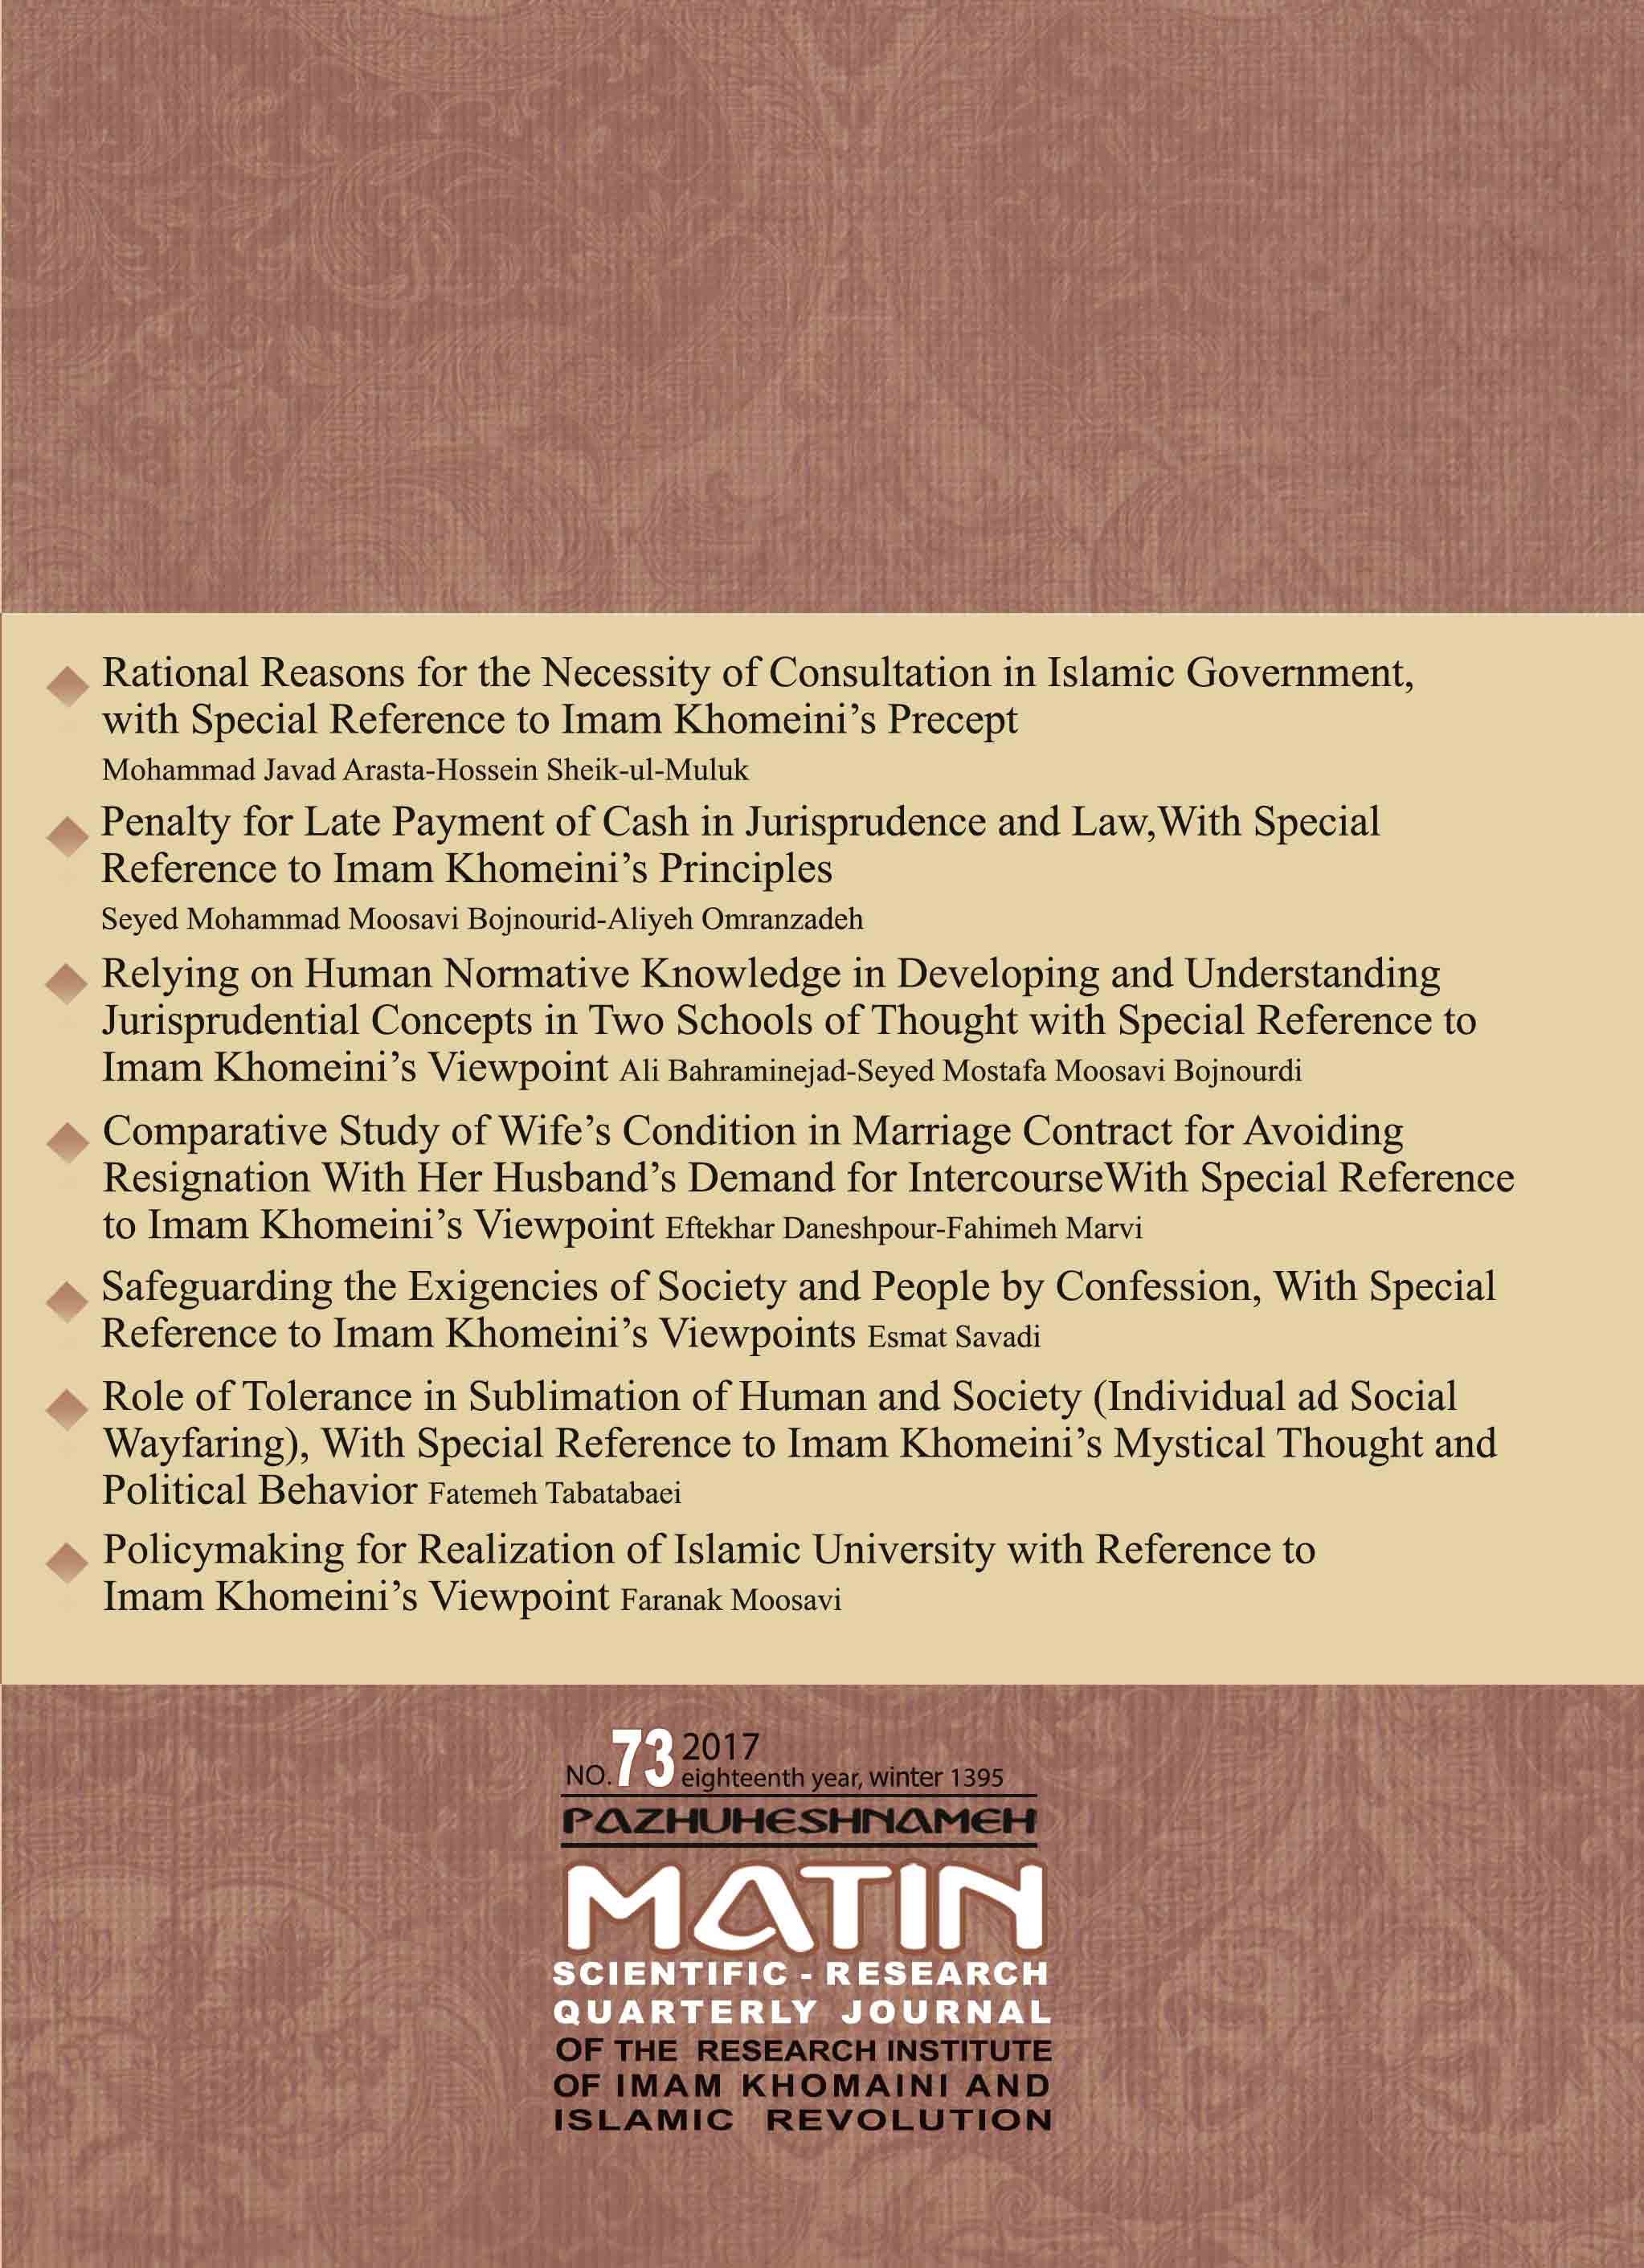 Matin Research Journal